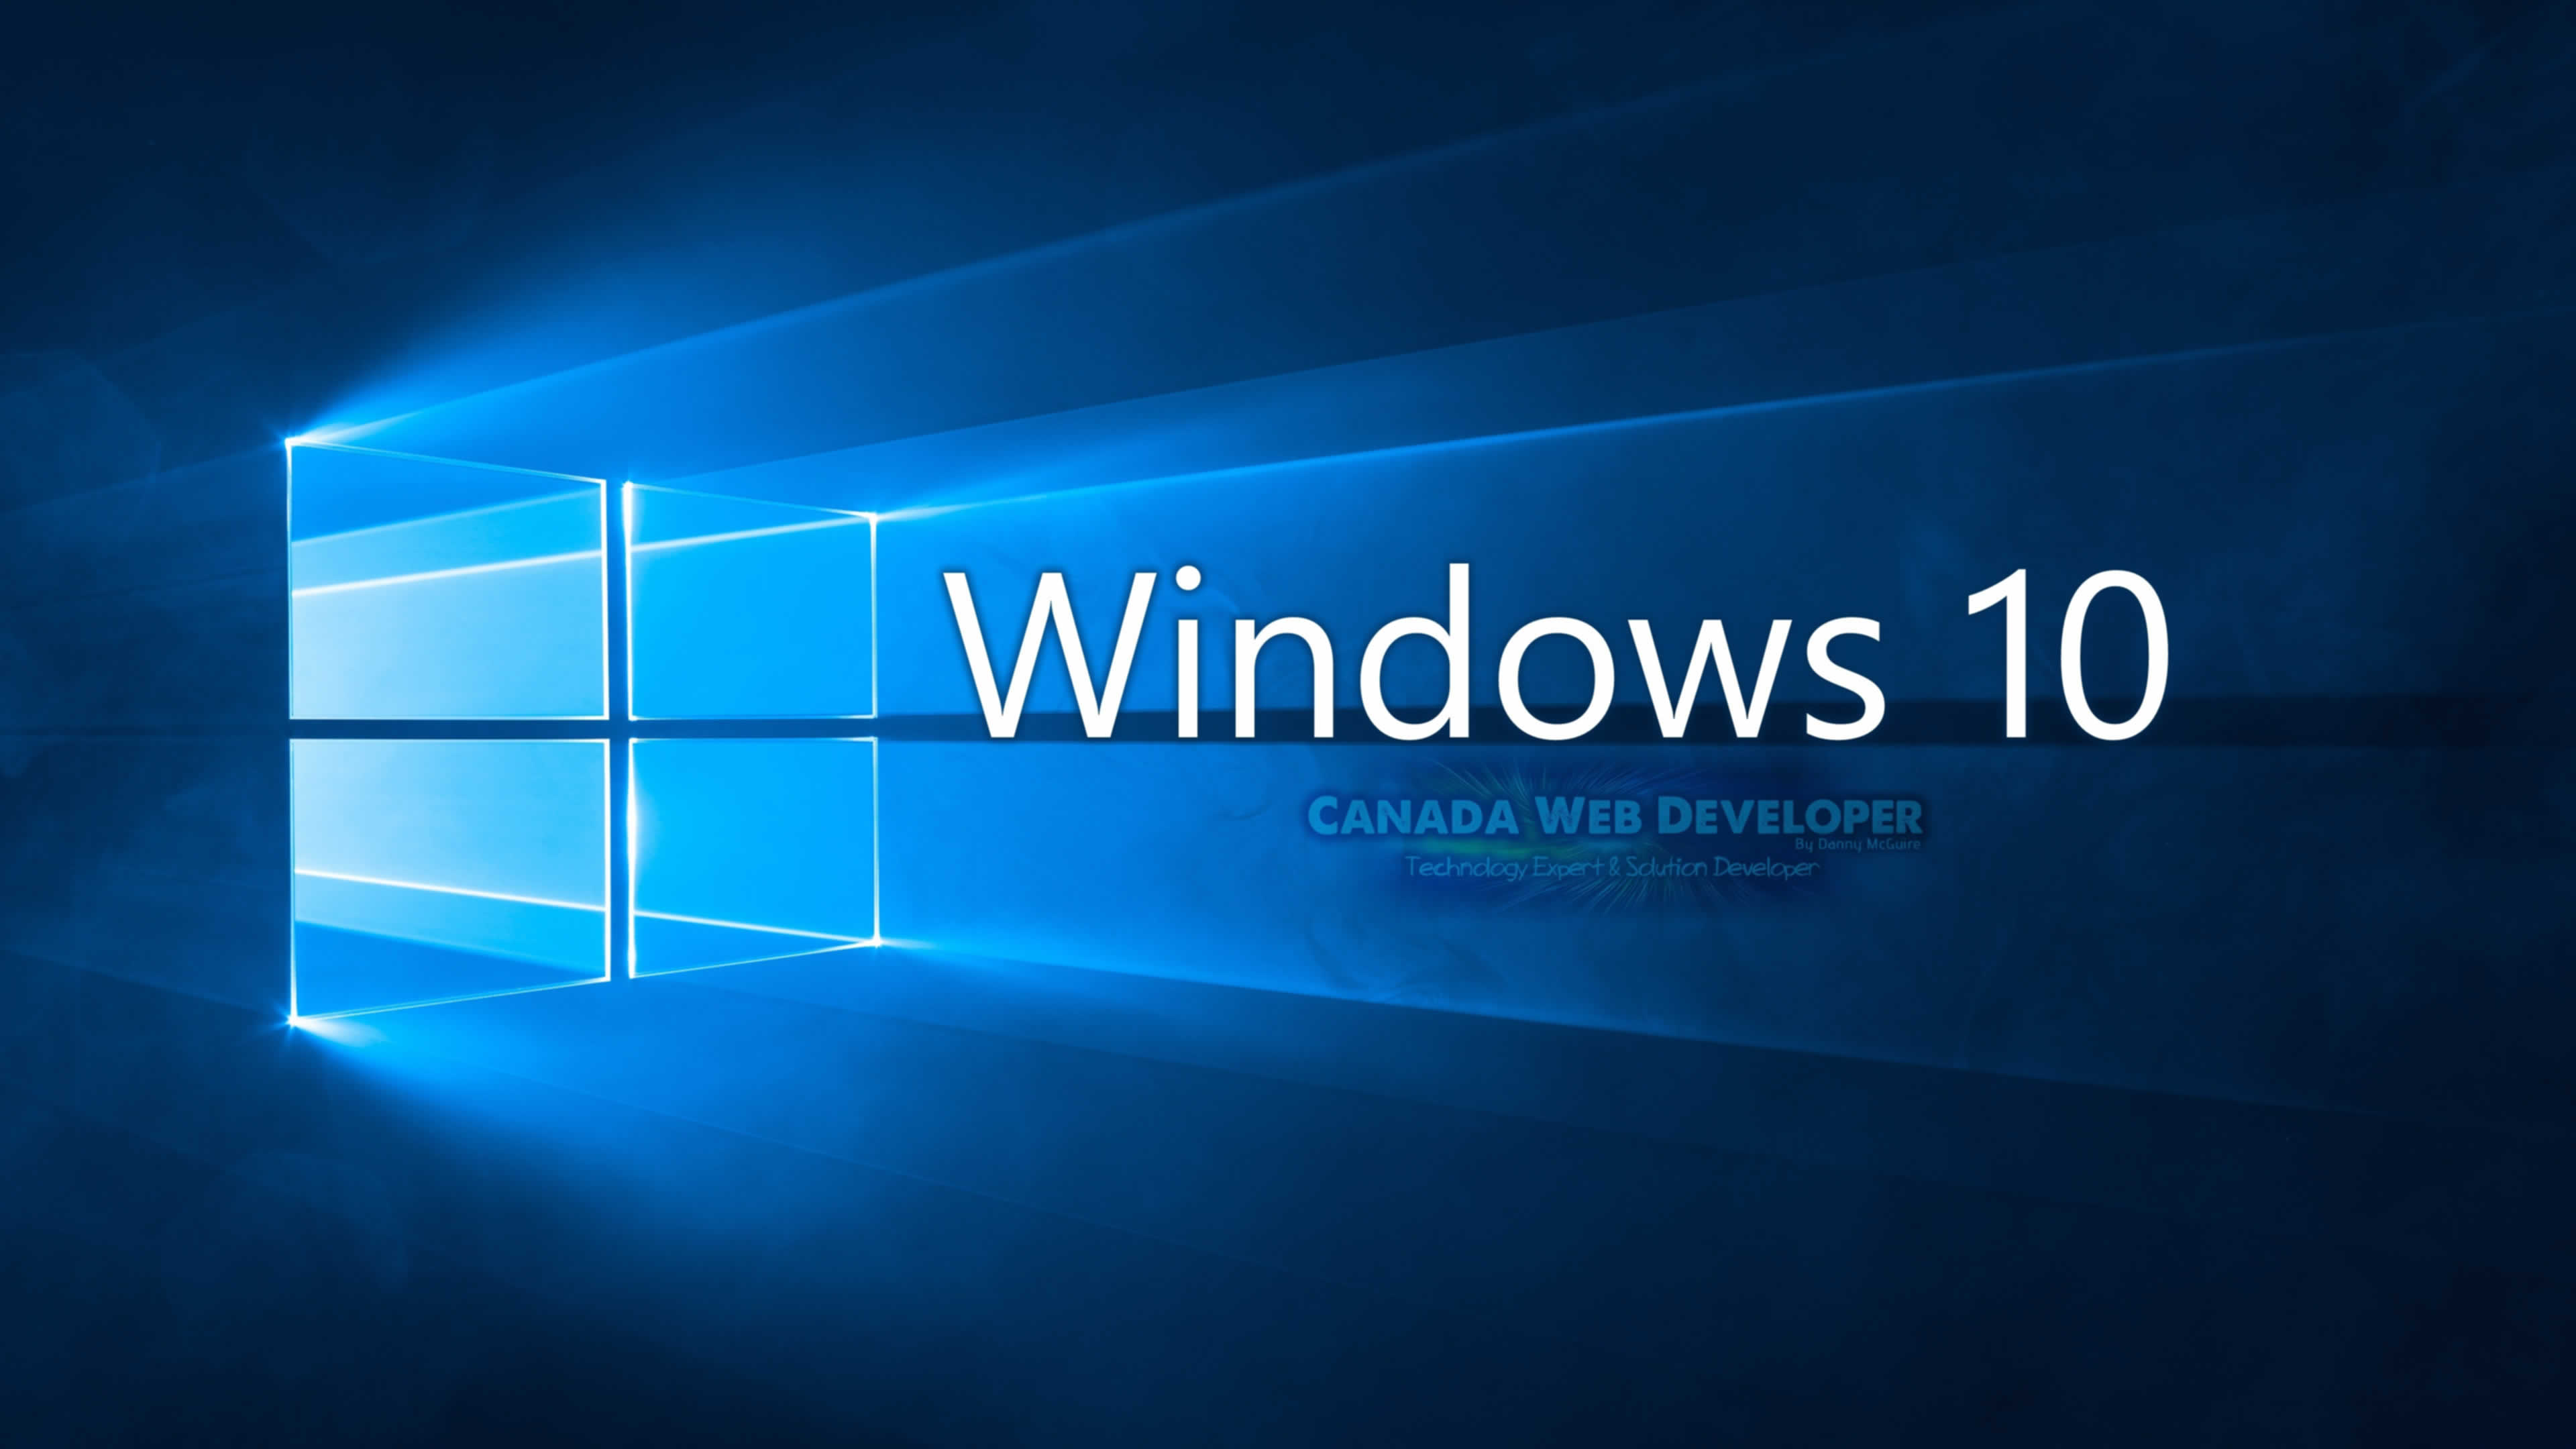 fond d'écran windows 10 pro,bleu,texte,lumière,éclairage,ciel